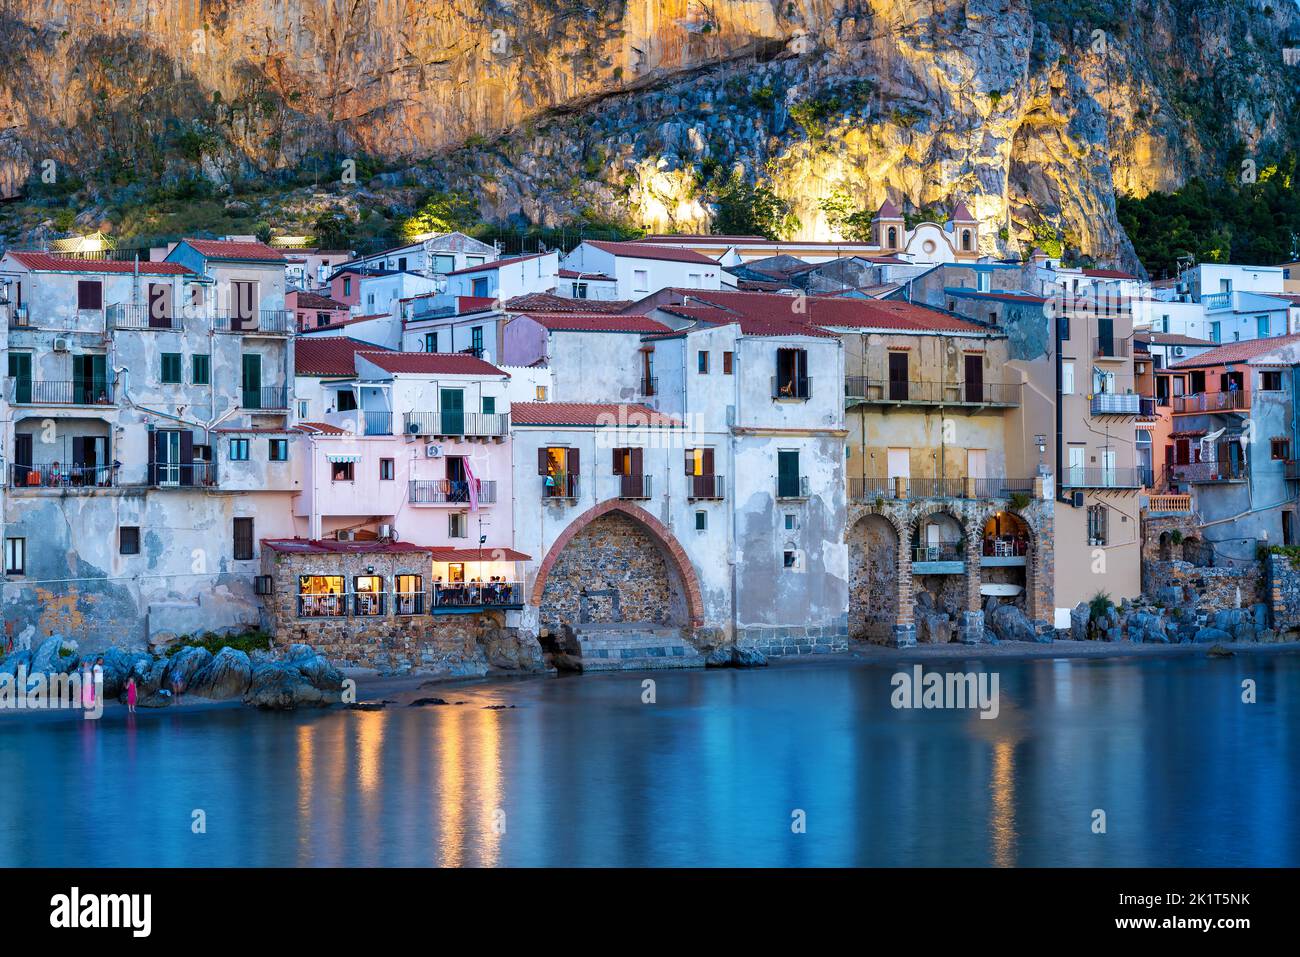 Vista delle case tradizionali architettura illuminata nella luce della sera, vicino alla spiaggia di Cefalù, Isola di Sicilia - Italia Foto Stock